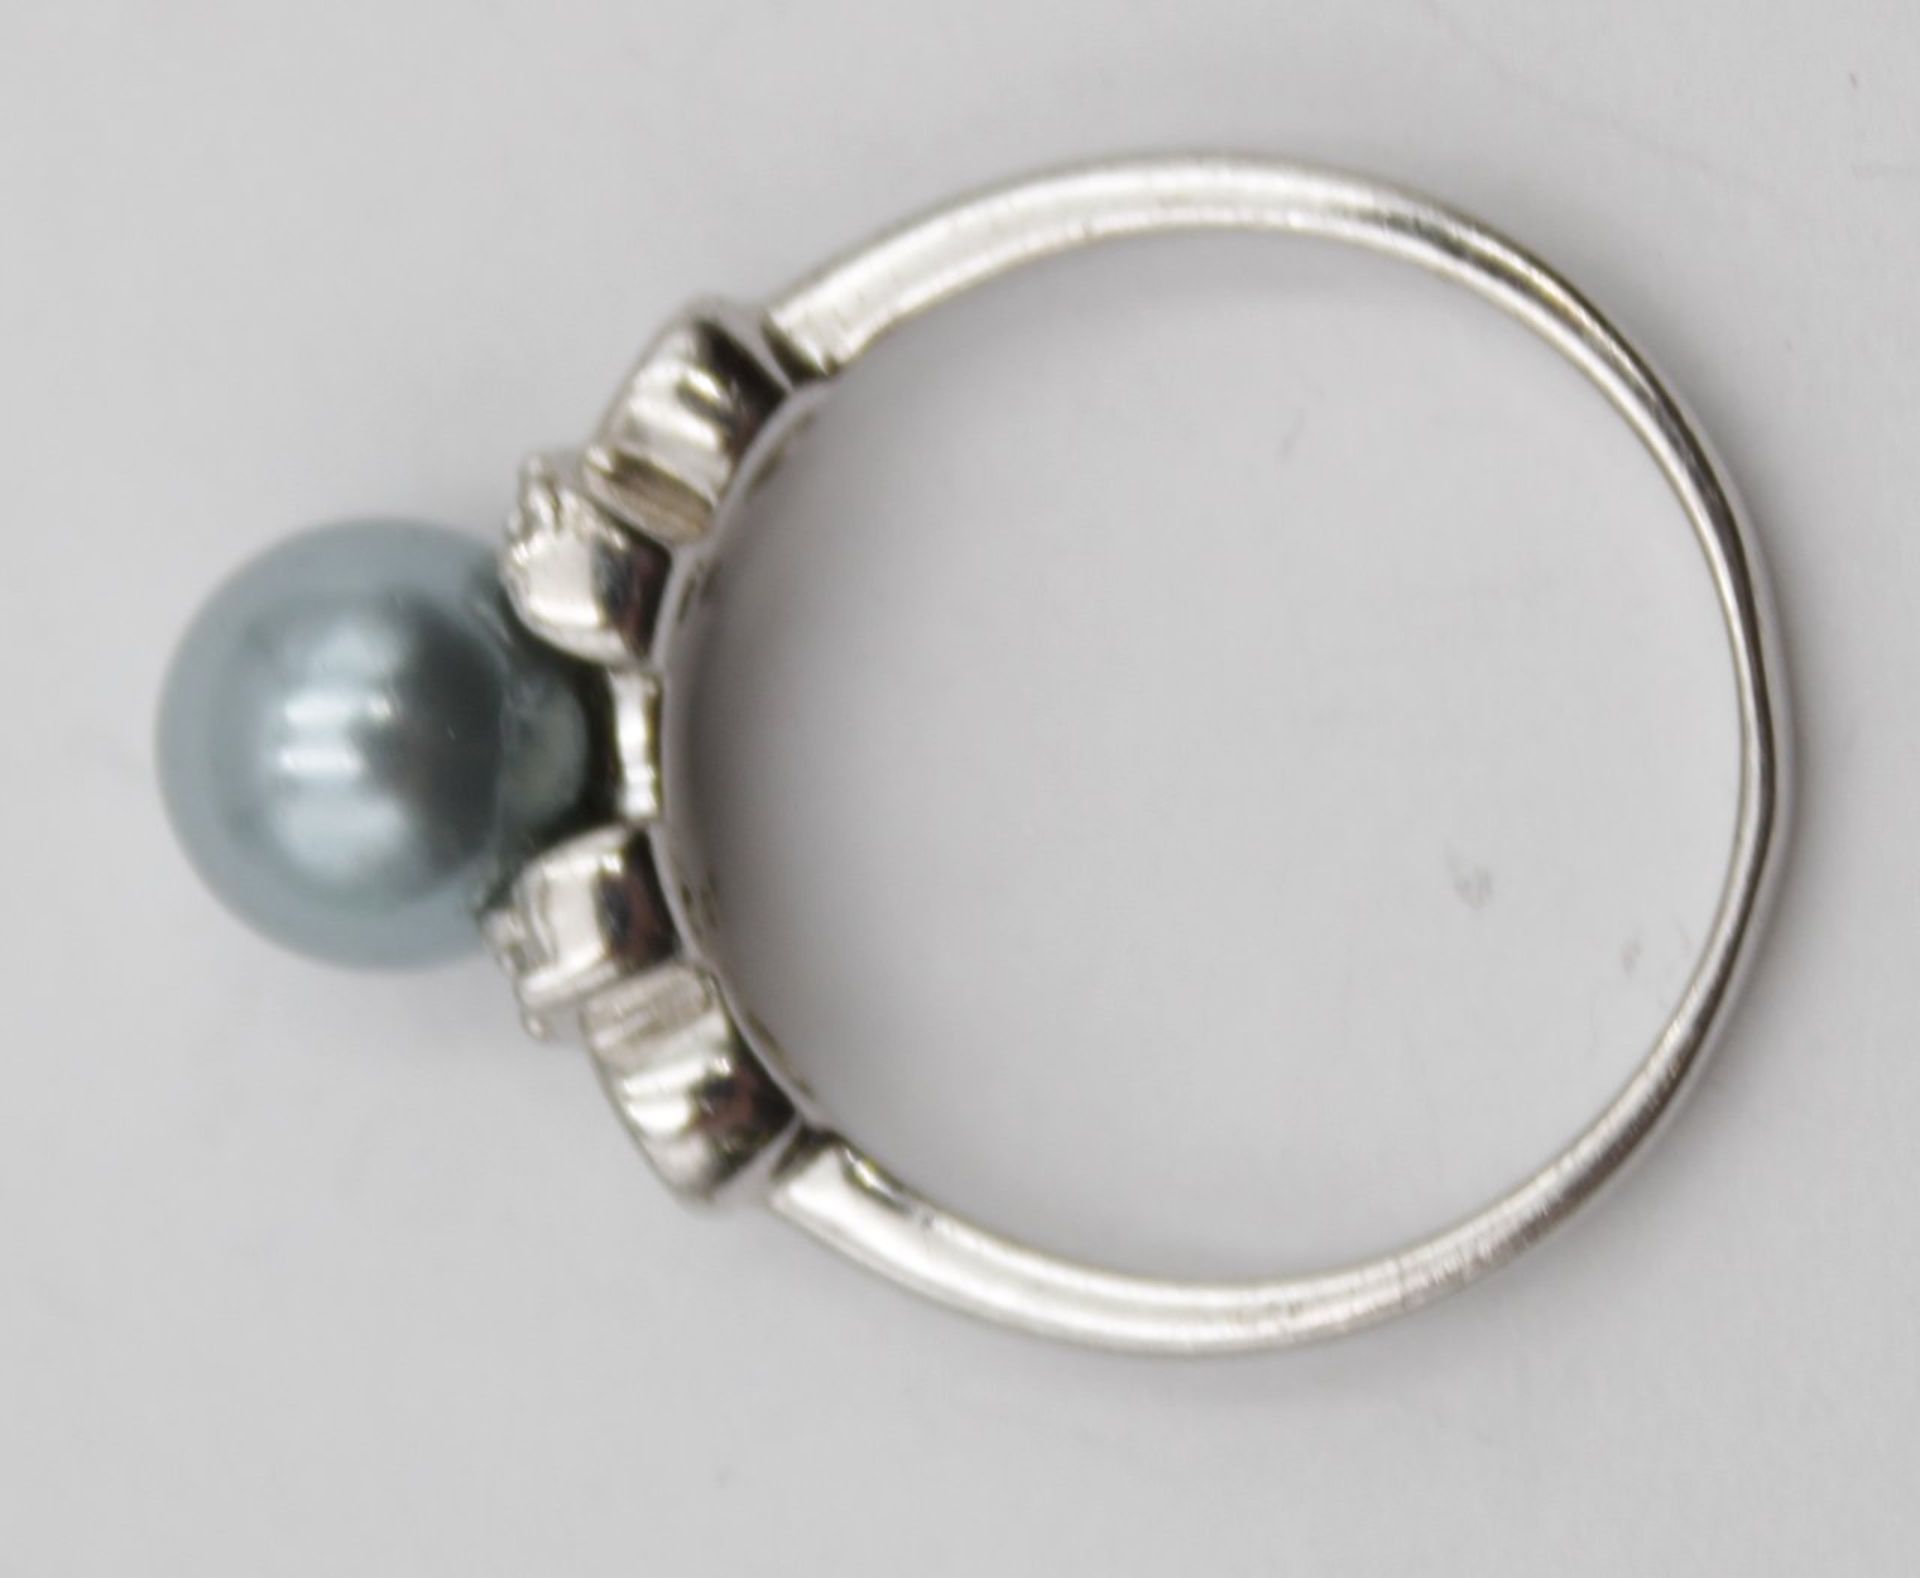 925er Silber-Ring mit Perle und klaren Steinen, RG 57, 3,4gr.